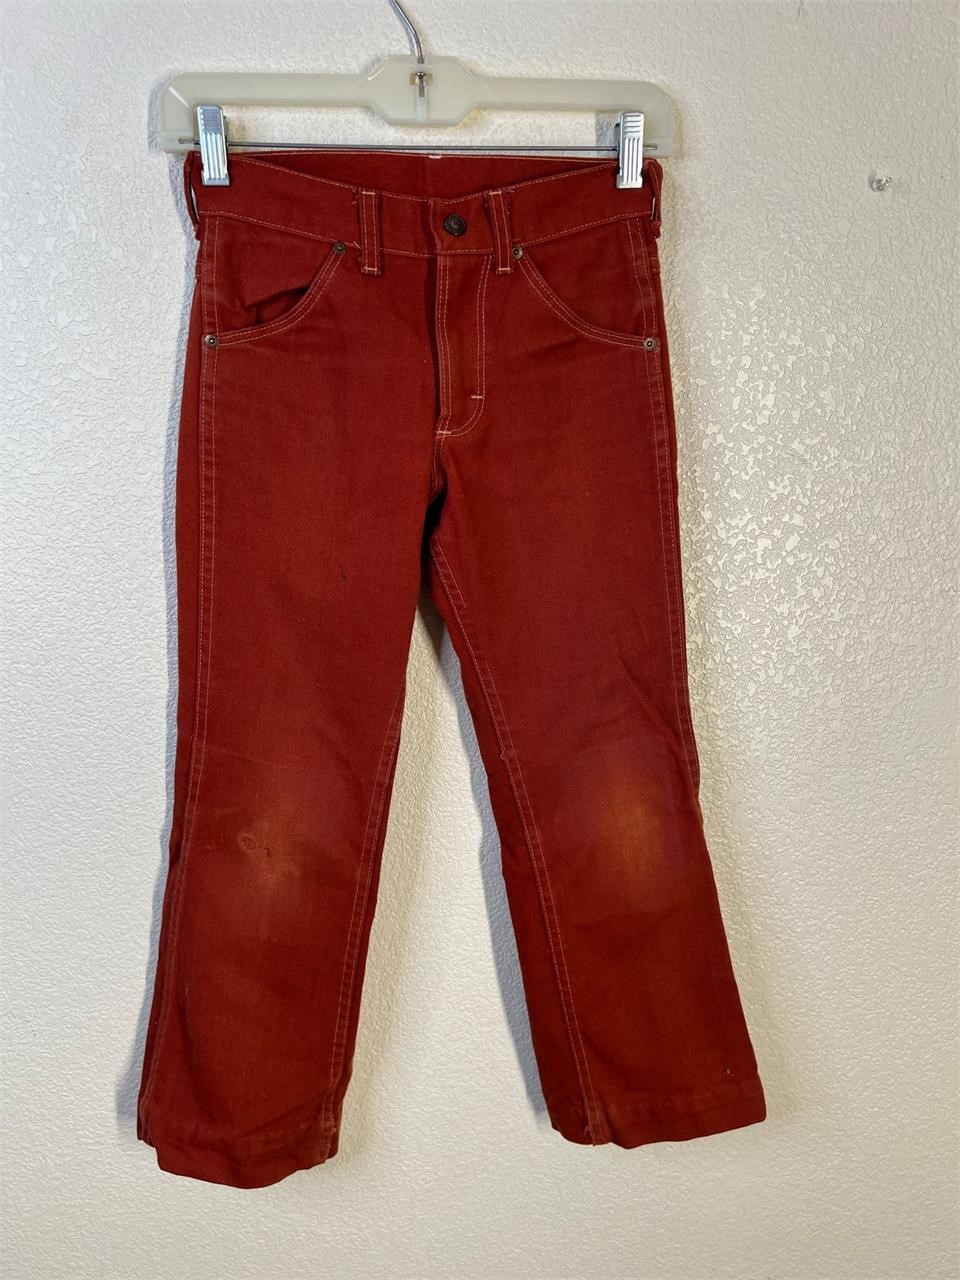 Vintage Sears Red Pants